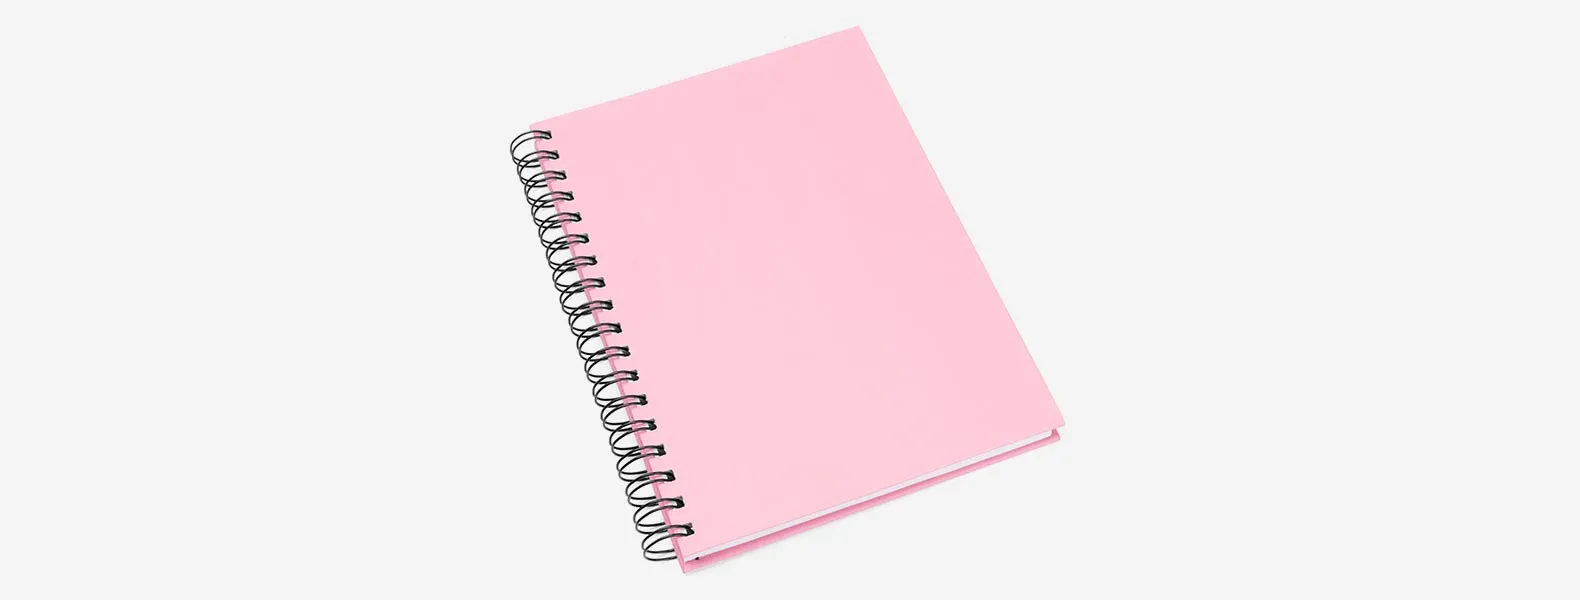 Caderno para anotações wire-o rosa com capa dura revestida em percalux linho. Conta com folha para dados pessoais, calendário e 100 folhas pautadas. Gramatura da folha de 70 g/m2